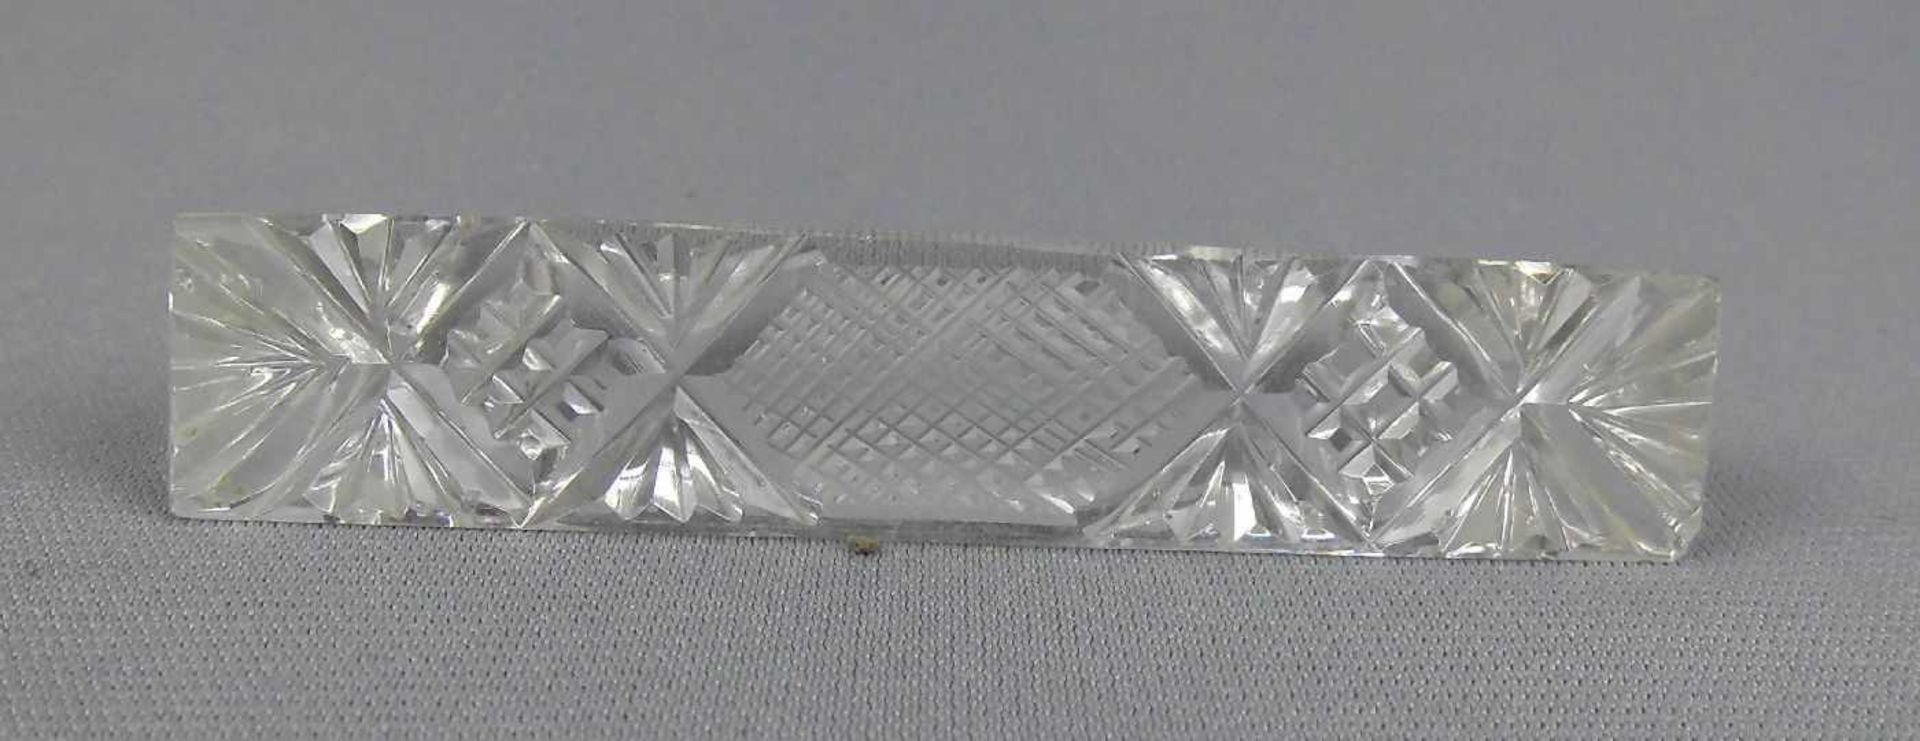 6 ART DÉCO - MESSERBÄNKCHEN / knife rests, Kristallglas mit Schliffdekor, um 1920. Trapezförmiger - Image 3 of 3